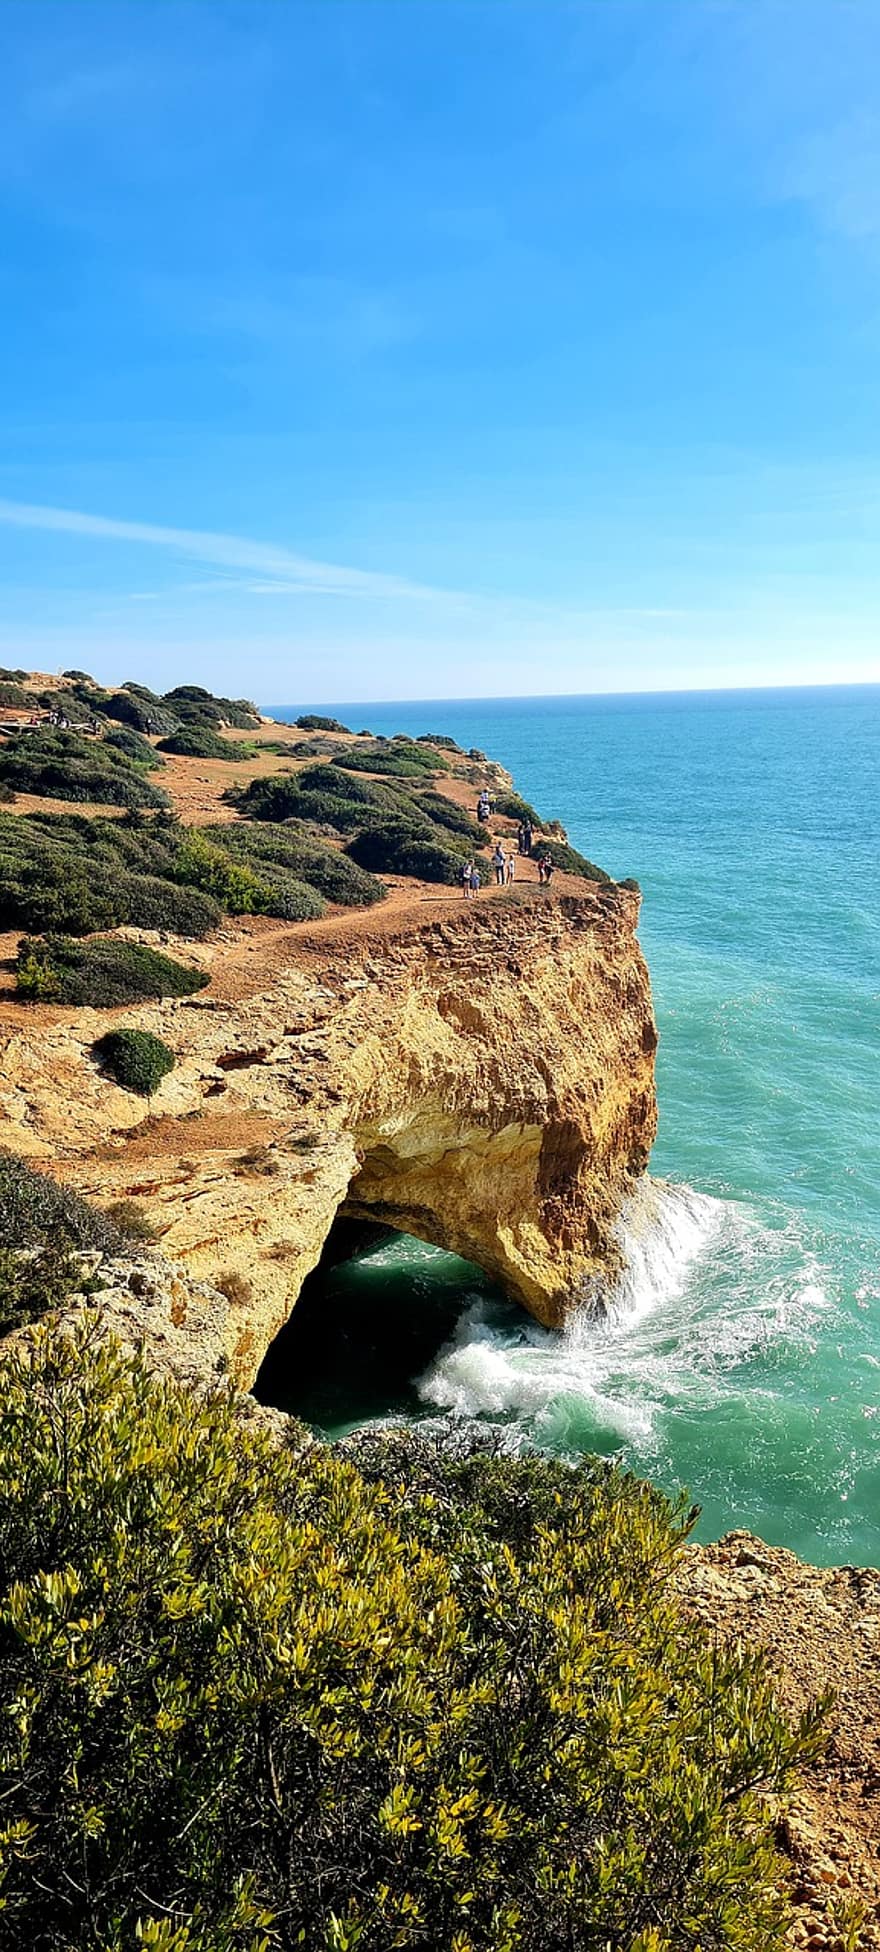 kyst, hav, Portugal, stein, Sea dom, dom, Algarve, gå, å reise, kysthavet, landskap